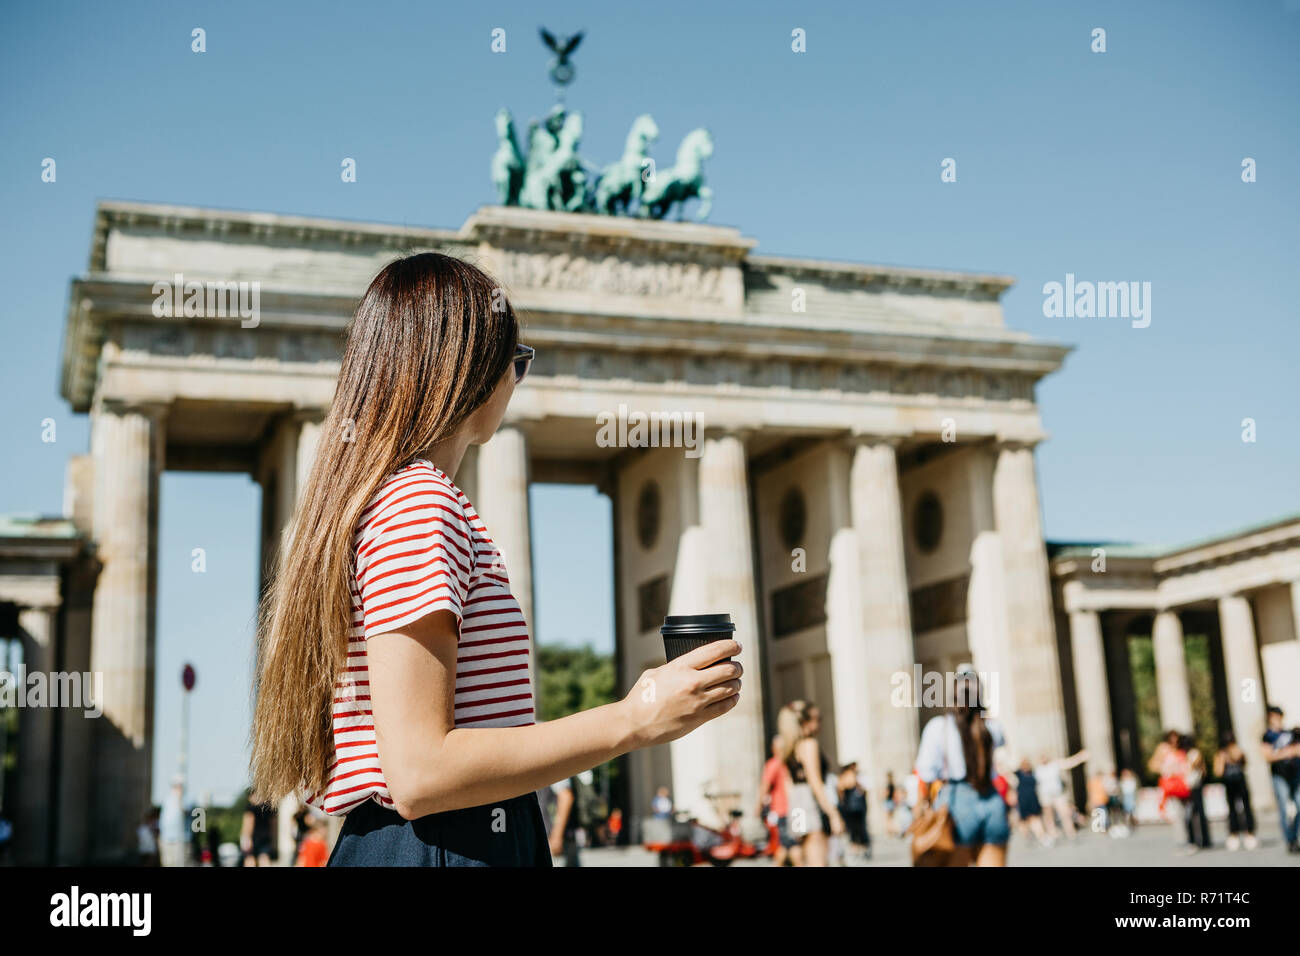 Eine Person hält eine Tasse mit Kaffee oder einem anderen Getränk beim Gehen oder Sightseeing in Berlin, Deutschland. Die Zukunft ist das Brandenburger Tor und verschwommenes unbekannte Menschen. Stockfoto